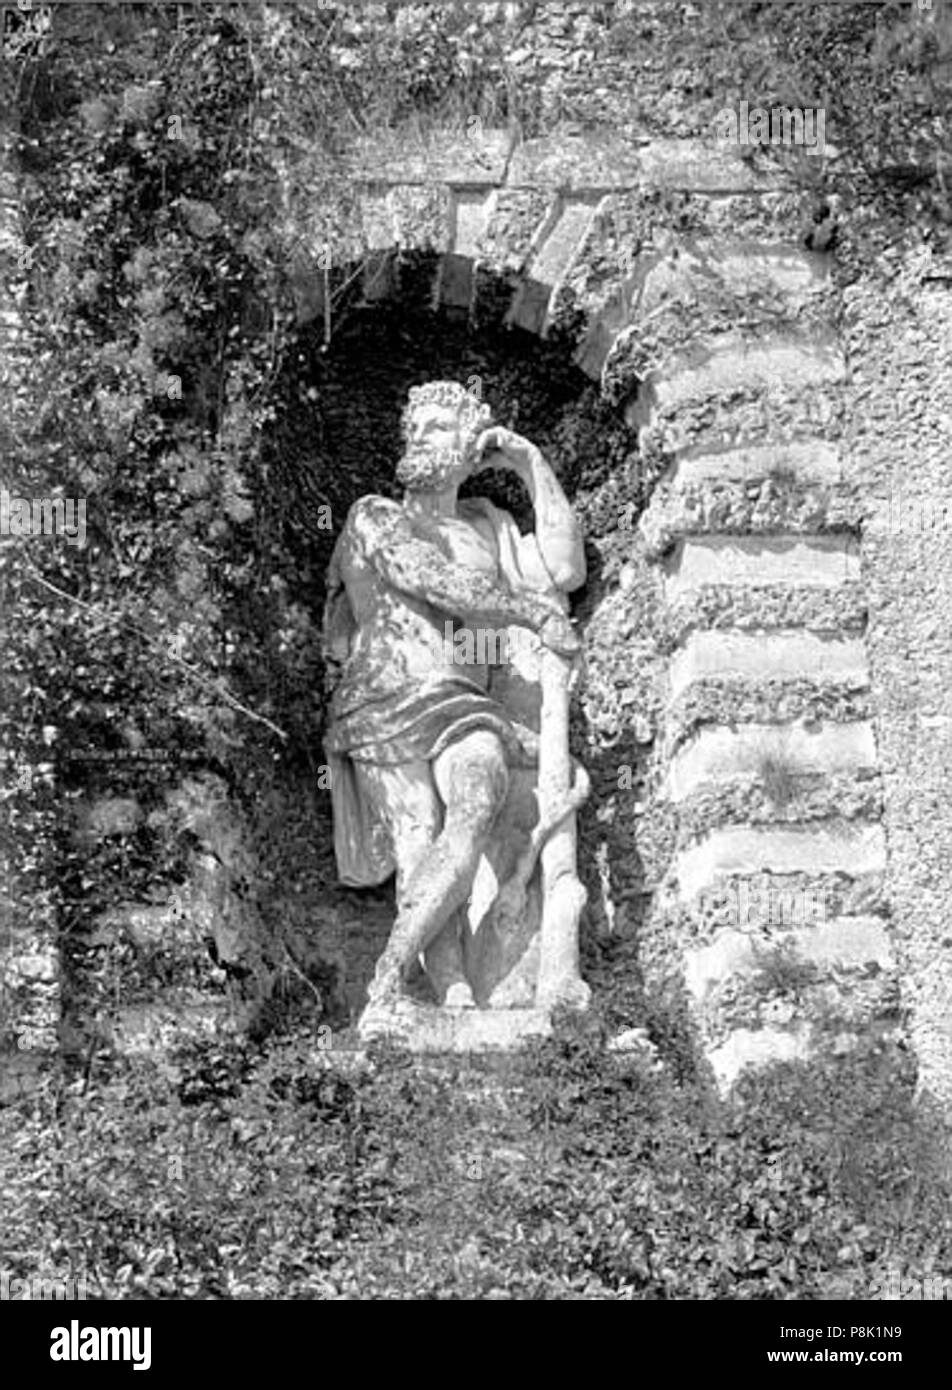 552 Terrasse et grotte de rocaille - Statua située dans une nicchia de la Terrasse, Hercule - Juvisy-sur-Orge - Médiathèque de l'architecture et du patrimoine - APMH00023496 Foto Stock